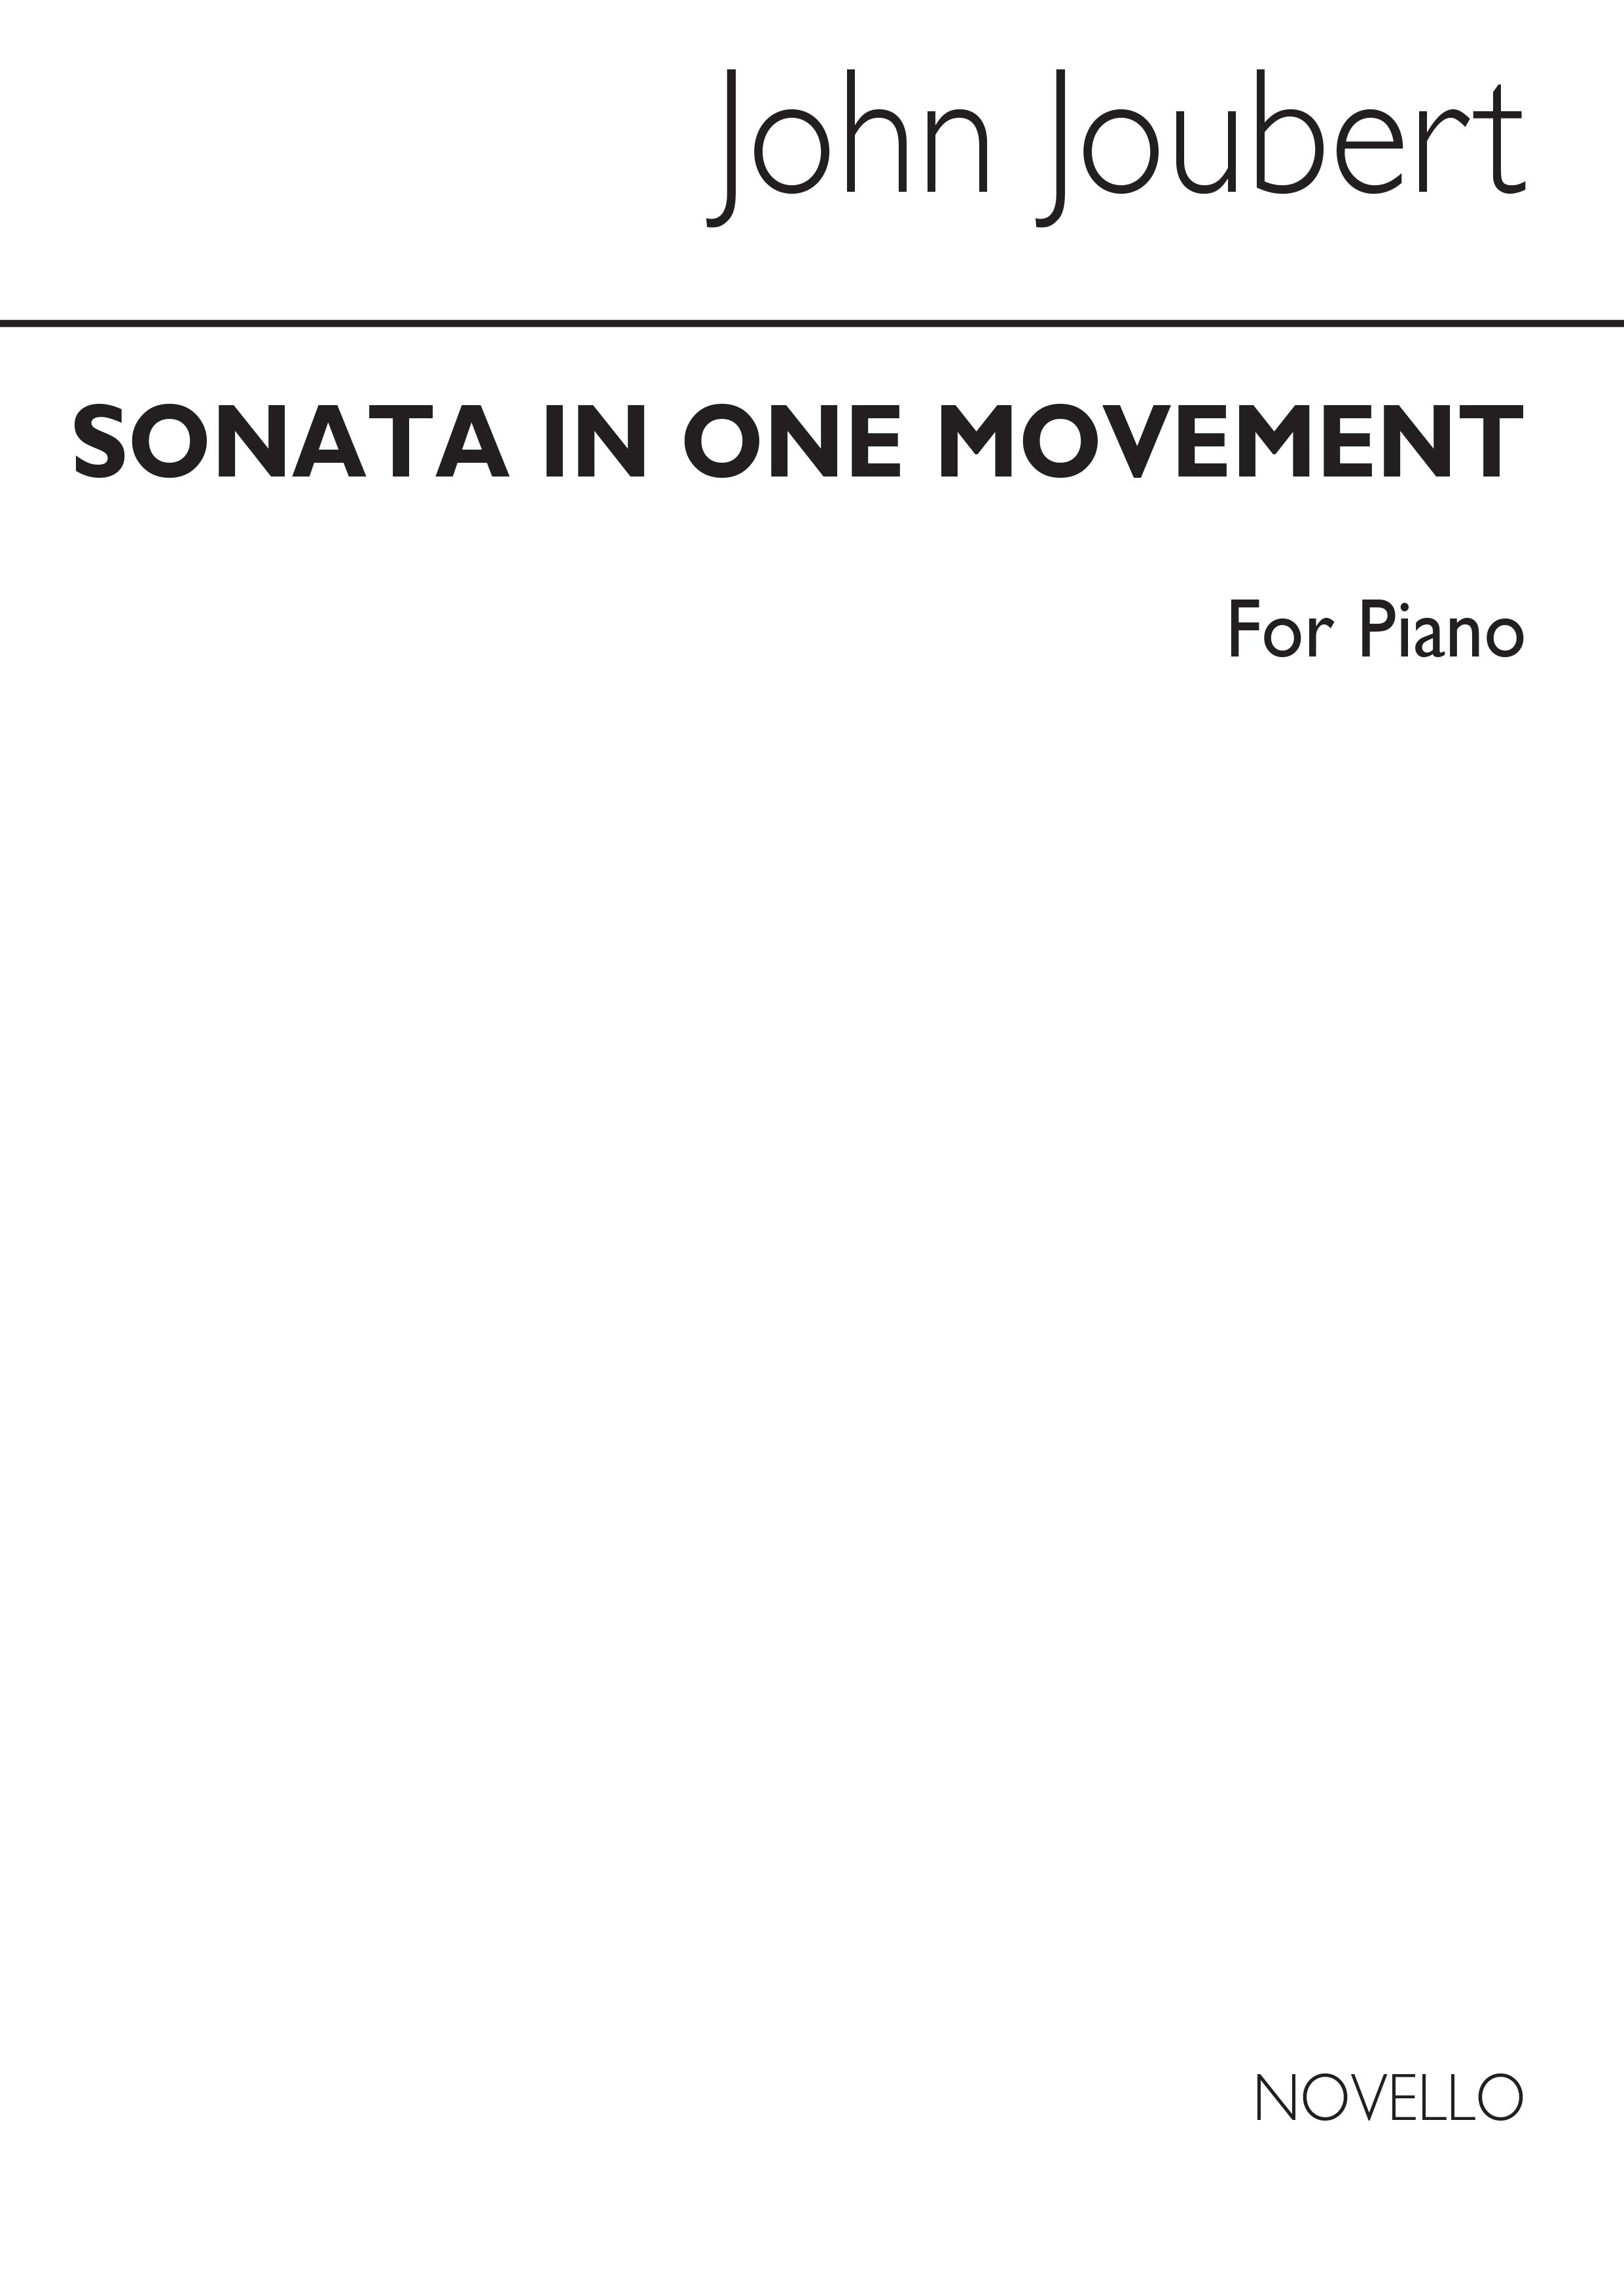 Joubert: Sonata In One Movement For Piano